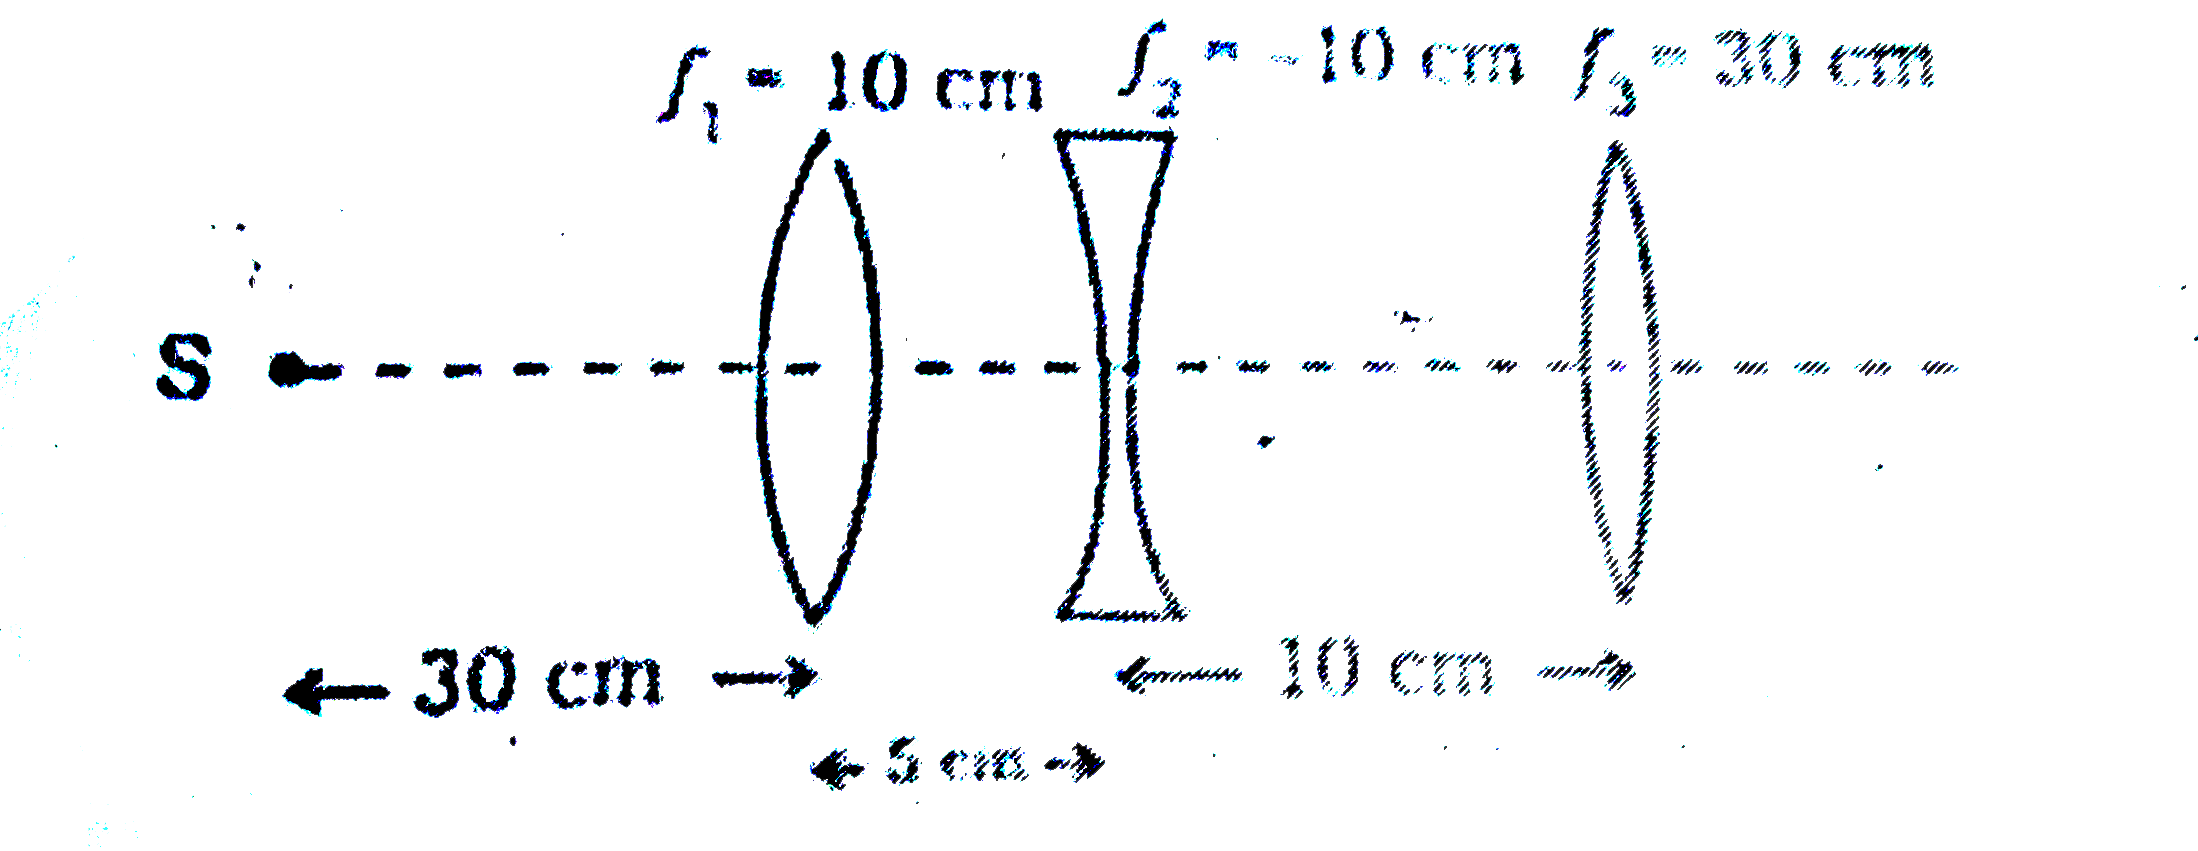 सम्पर्क  में  रखे  दो  पतले   लेंसों के  संयोग   की  फोकस दुरी  का  सूत्र   लिखिए |  यदि  एक लेंस   उत्तल  तथा  दूसरा  लेंस  अवतल   हो  तब   संयुक्त    लेंस    की  प्रकृति  क्या  होगी  |  अपने   उत्तर  को  स्पष्ट  कीजिए |  दिए   गए  चित्र  में  लेंसों  के  संयोजन  से वस्तु  S  के  प्रतिबिम्ब  की  स्थिति  ज्ञात  कीजिए |